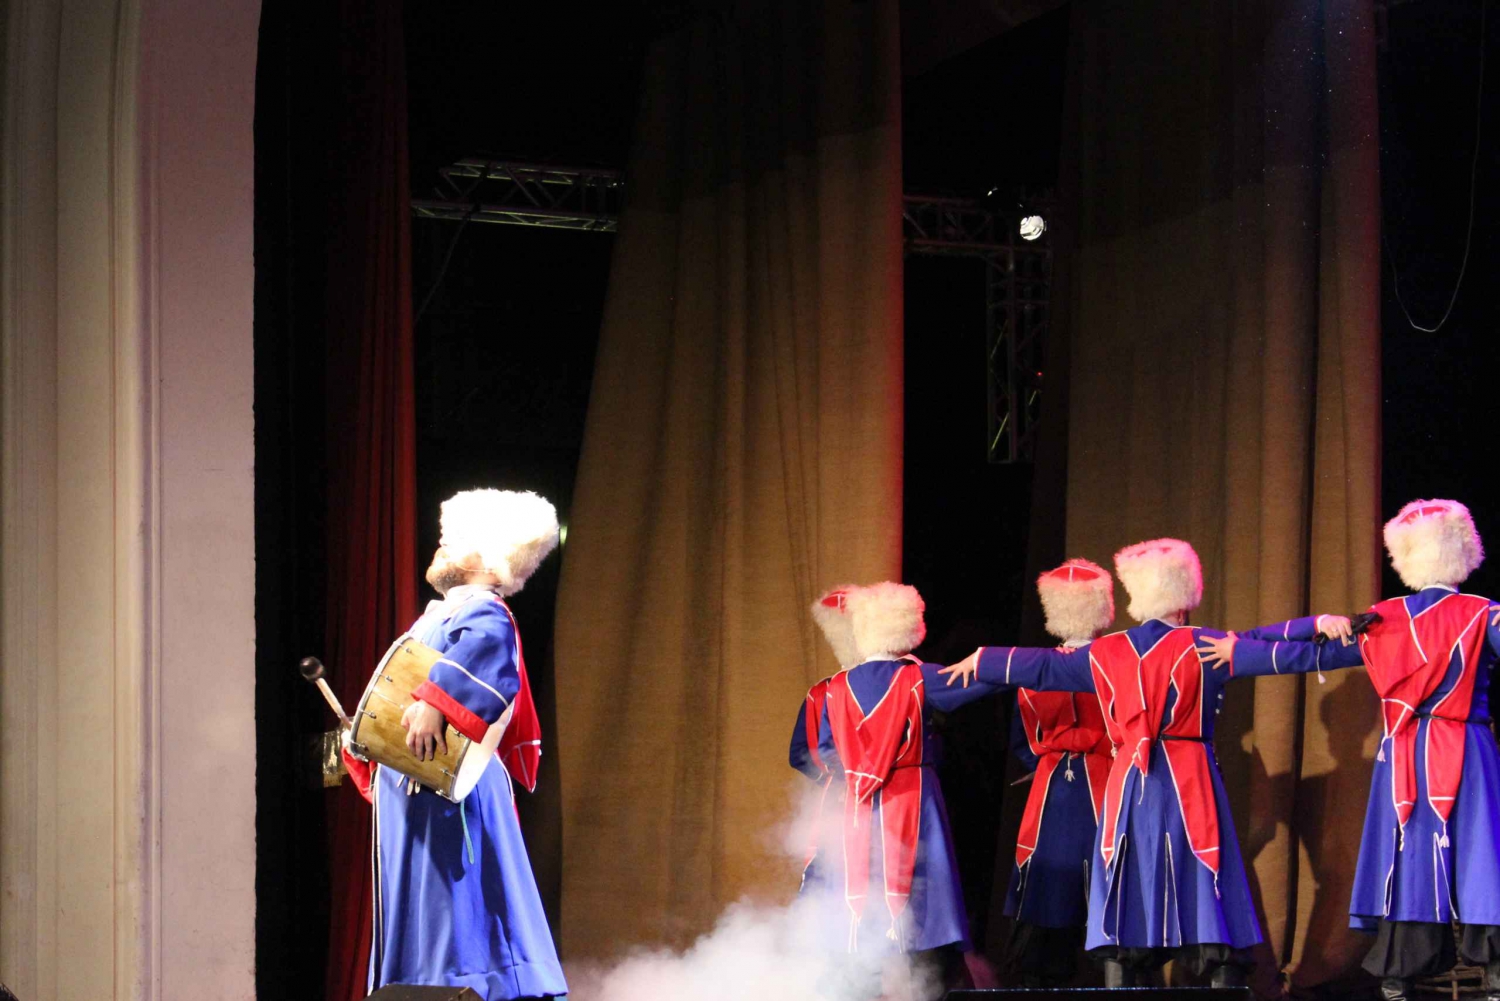 St. Petersburg: Russian Cossacks Show